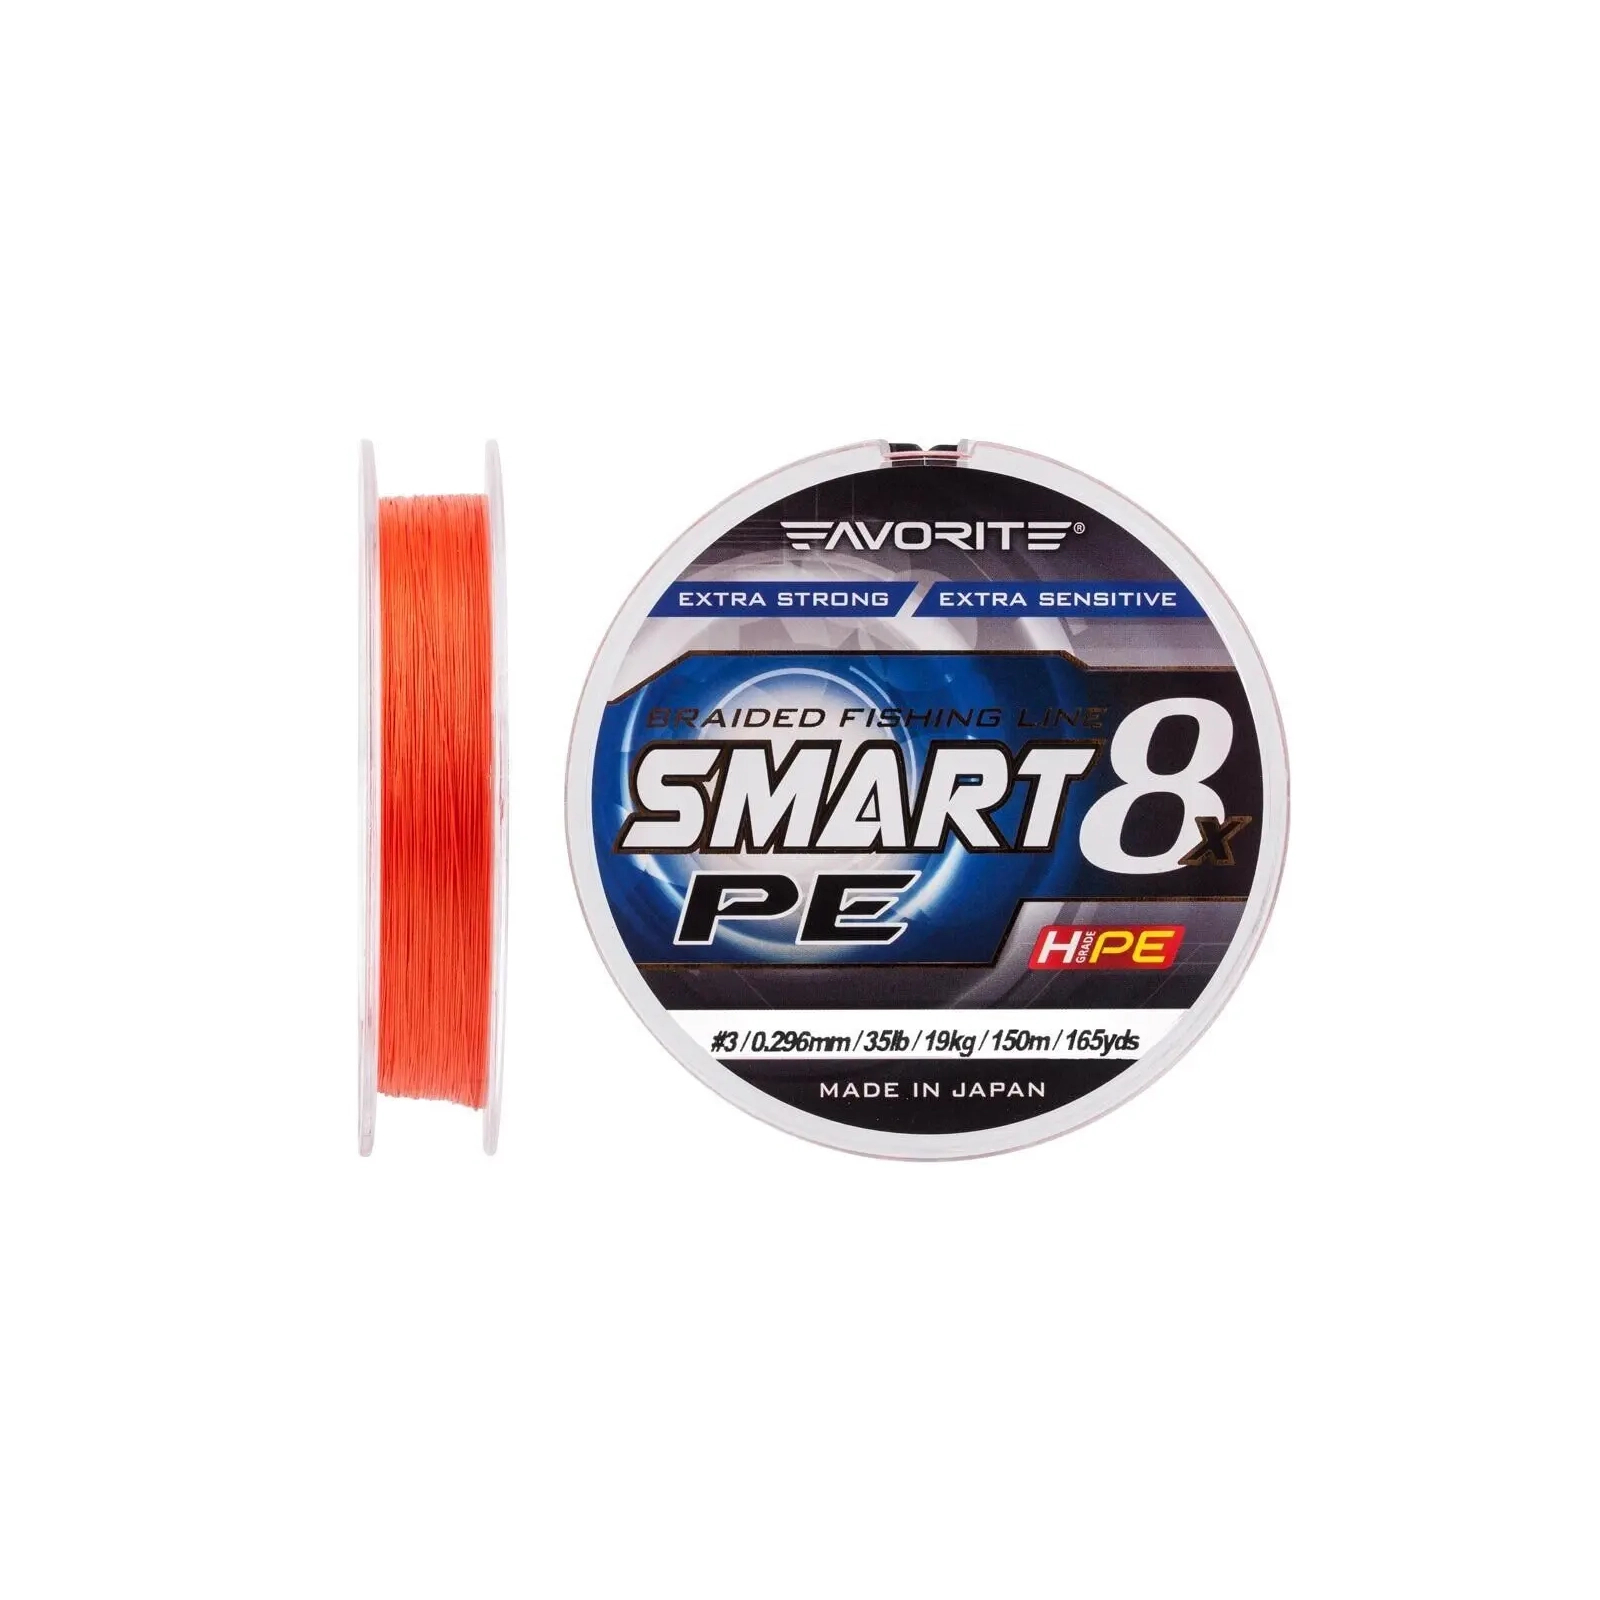 Шнур Favorite Smart PE 8x 150м 3.0/0.296mm 35lb/19kg Red Orange (1693.10.87) зображення 2